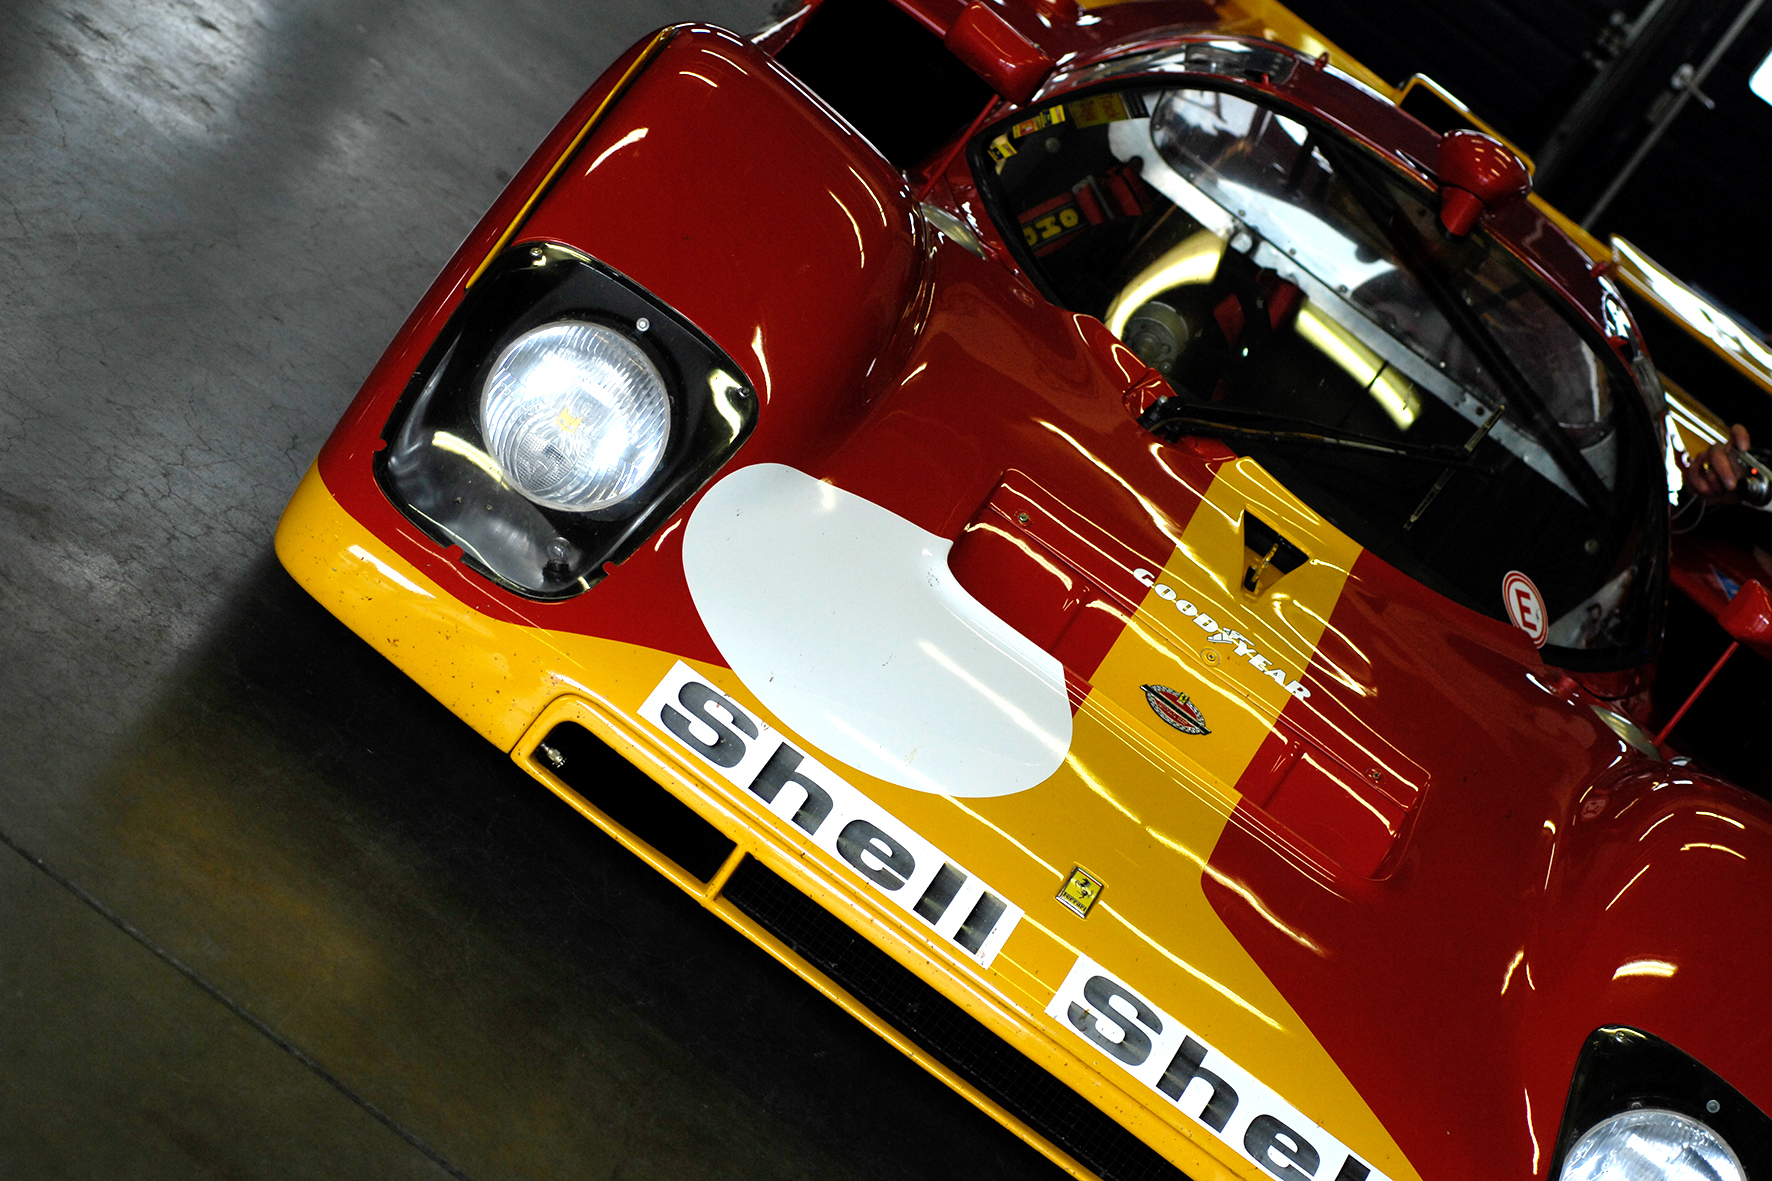 Ferrari 512 S / M - Maranello’s Response To The Porsche 917